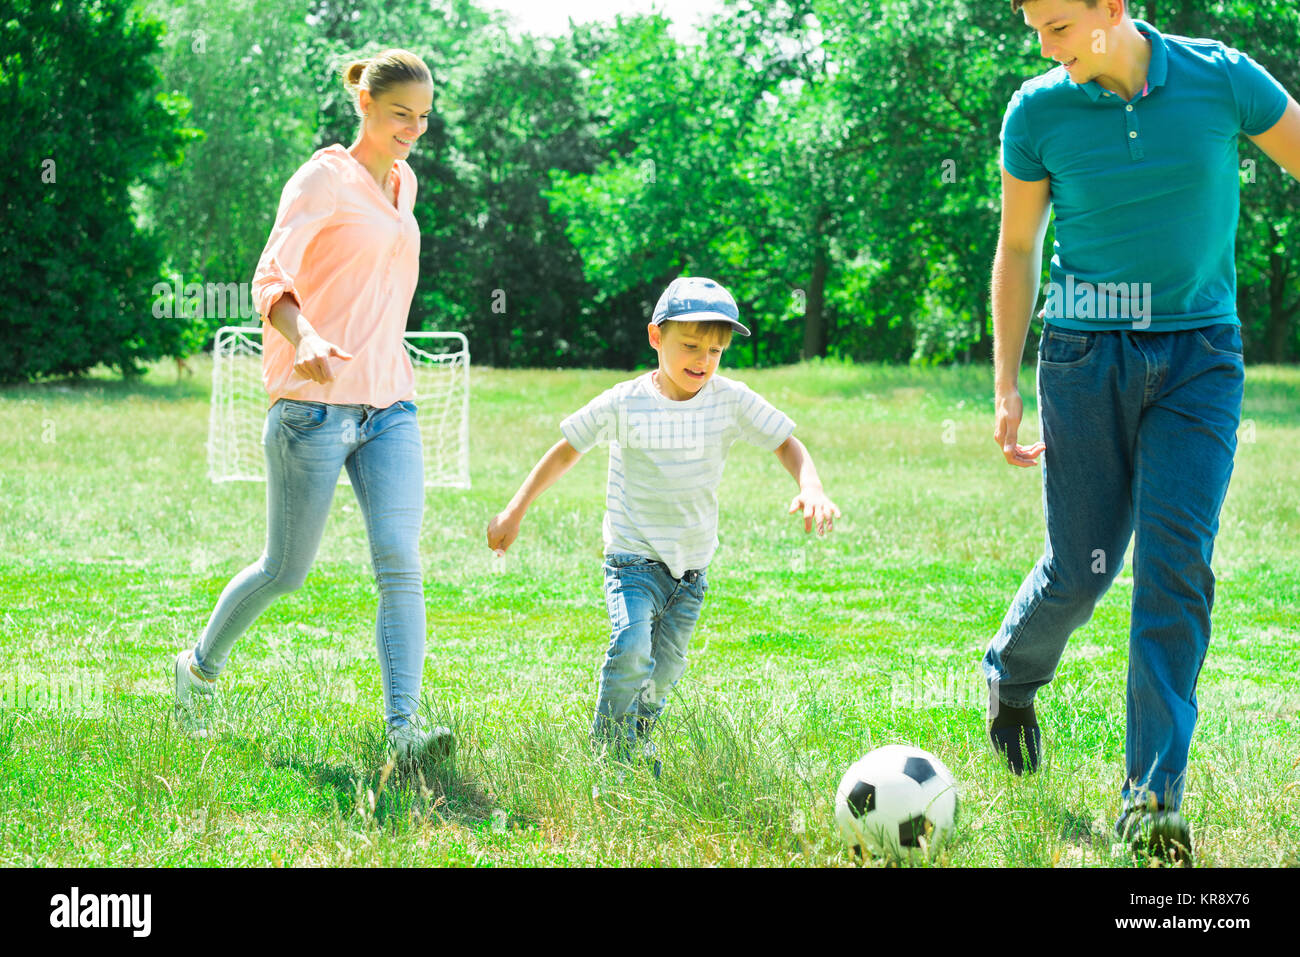 Familie Spielen mit Fußball Stockfoto